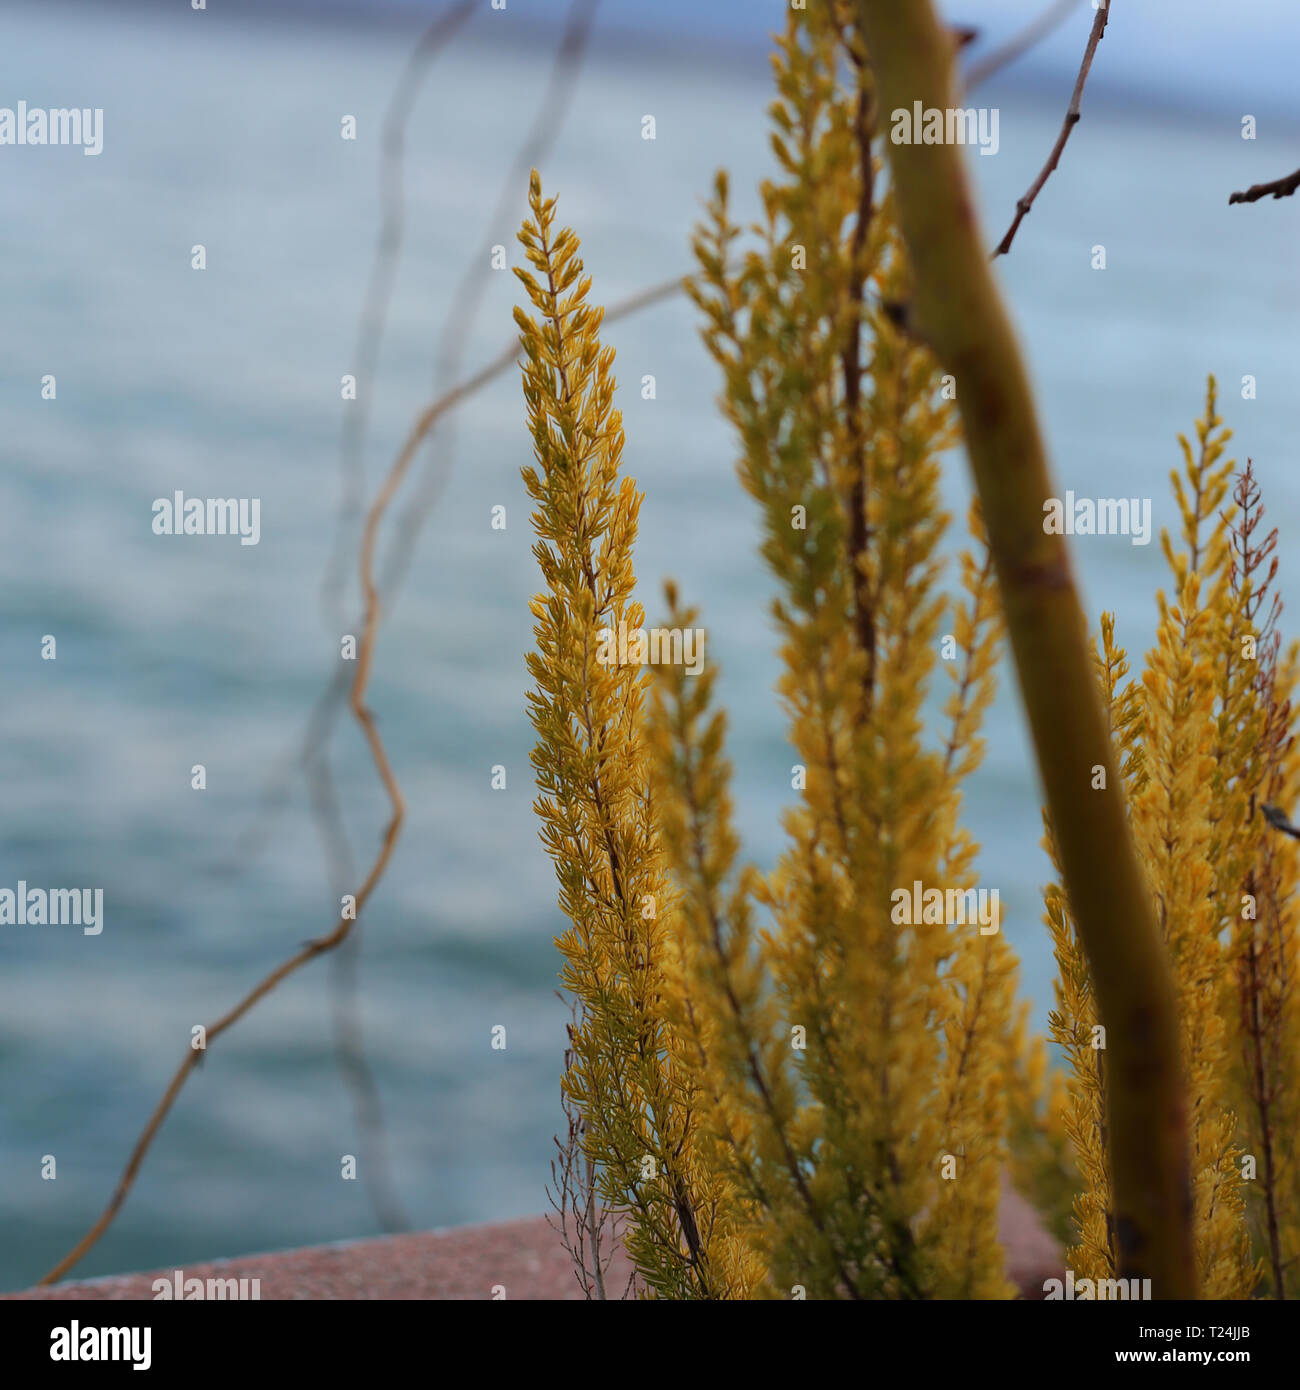 Bei fiori gialli ed il tronco di un piccolo albero fotografato appena prima che Sun ha iniziato a impostare in Nyon, Svizzera. Immagine a colori. Foto Stock